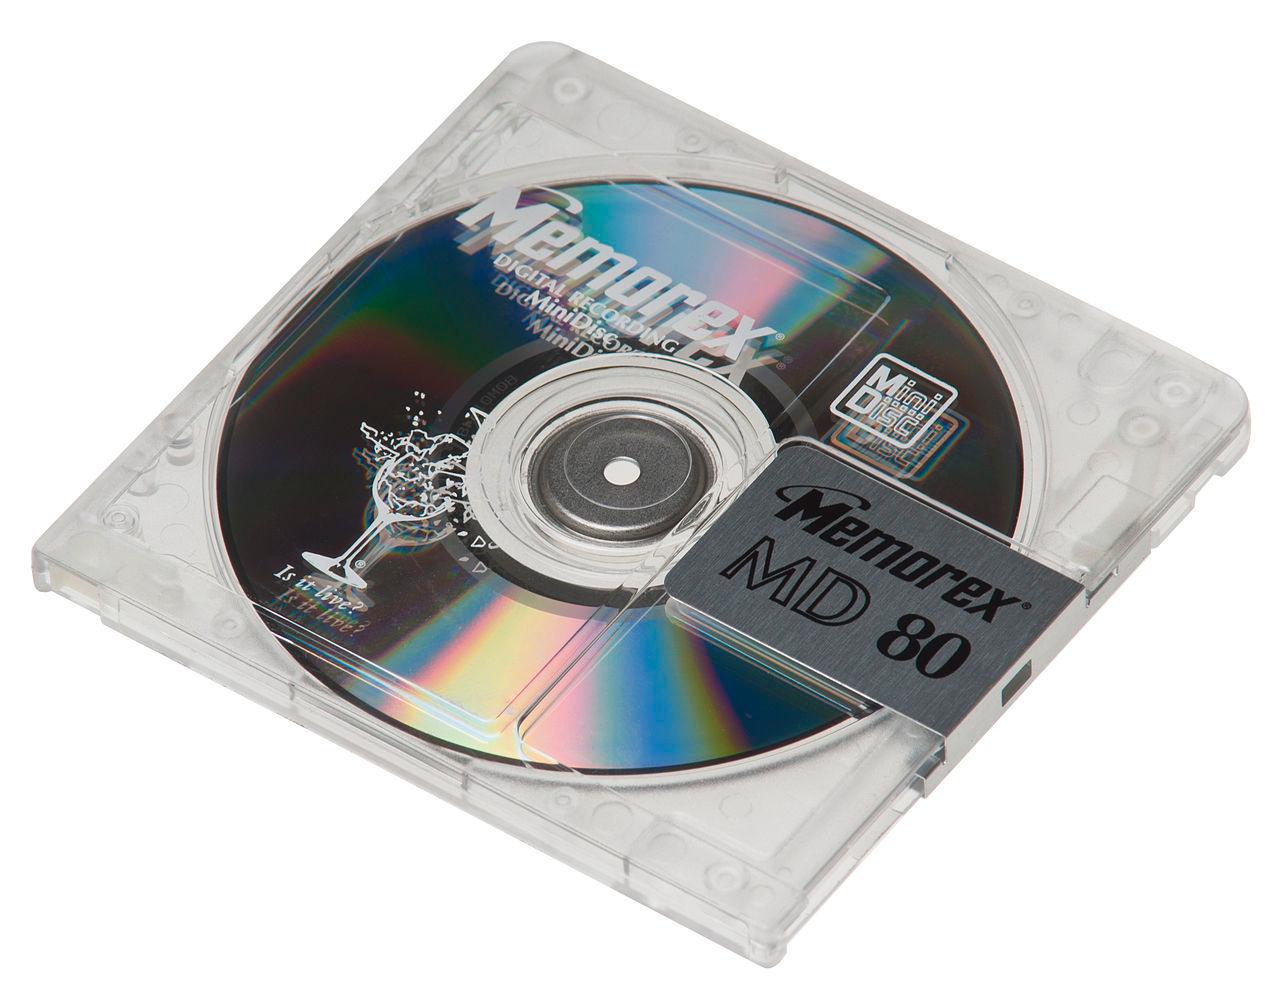 MiniDisc kan minne litt om en diskett i måten den fungerer på. (Foto: Wikipedia)